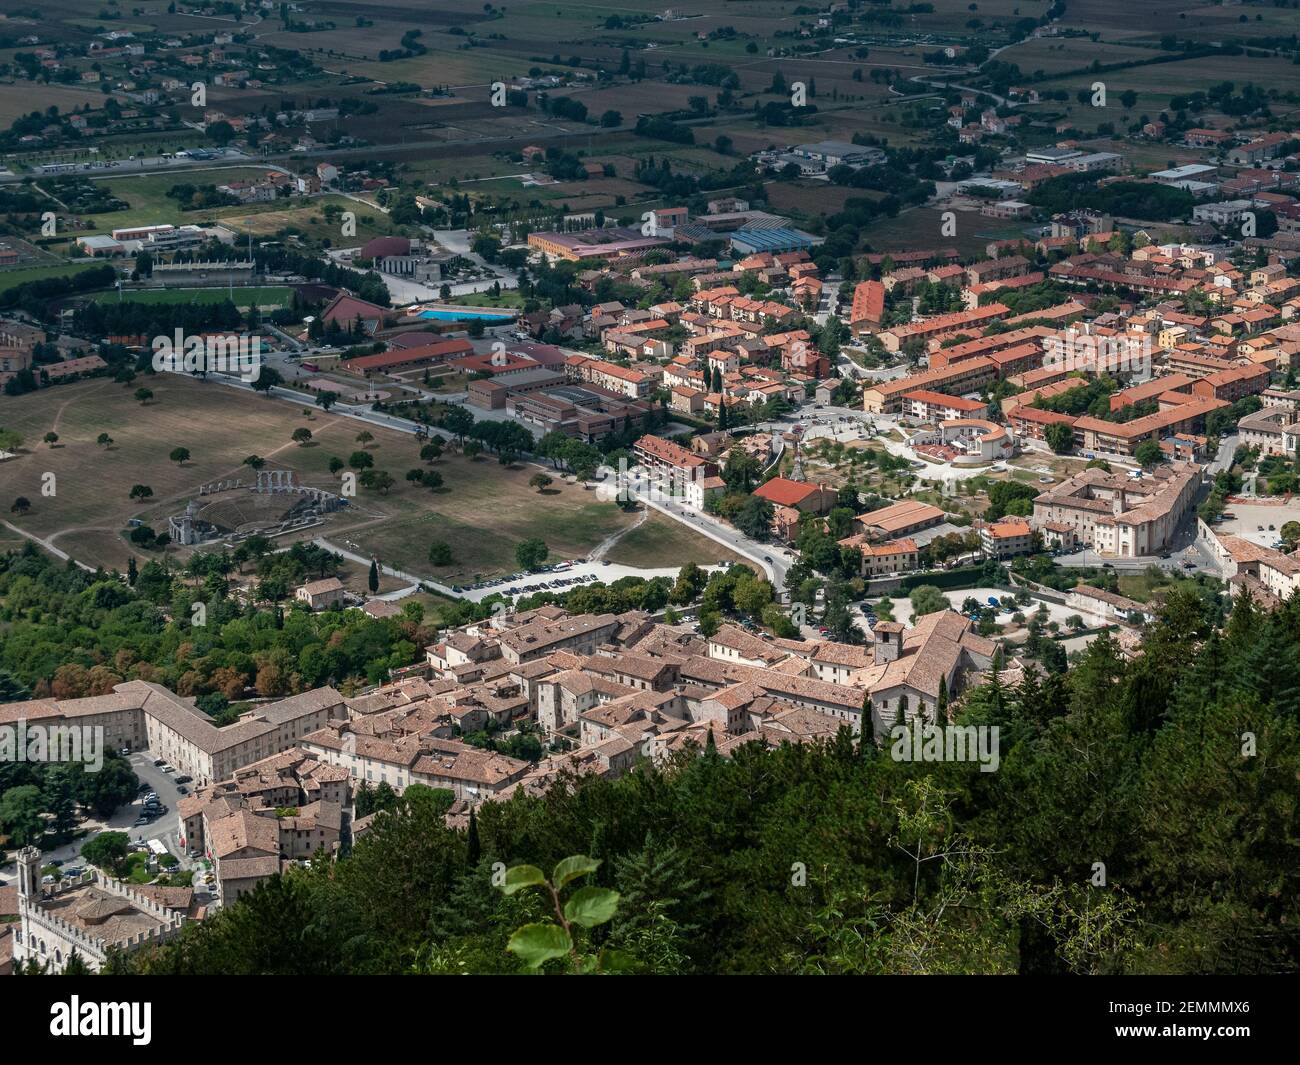 Vue imprenable sur la ville médiévale de Gubbio. Province de Pérouse, Ombrie, Italie, Europe Banque D'Images